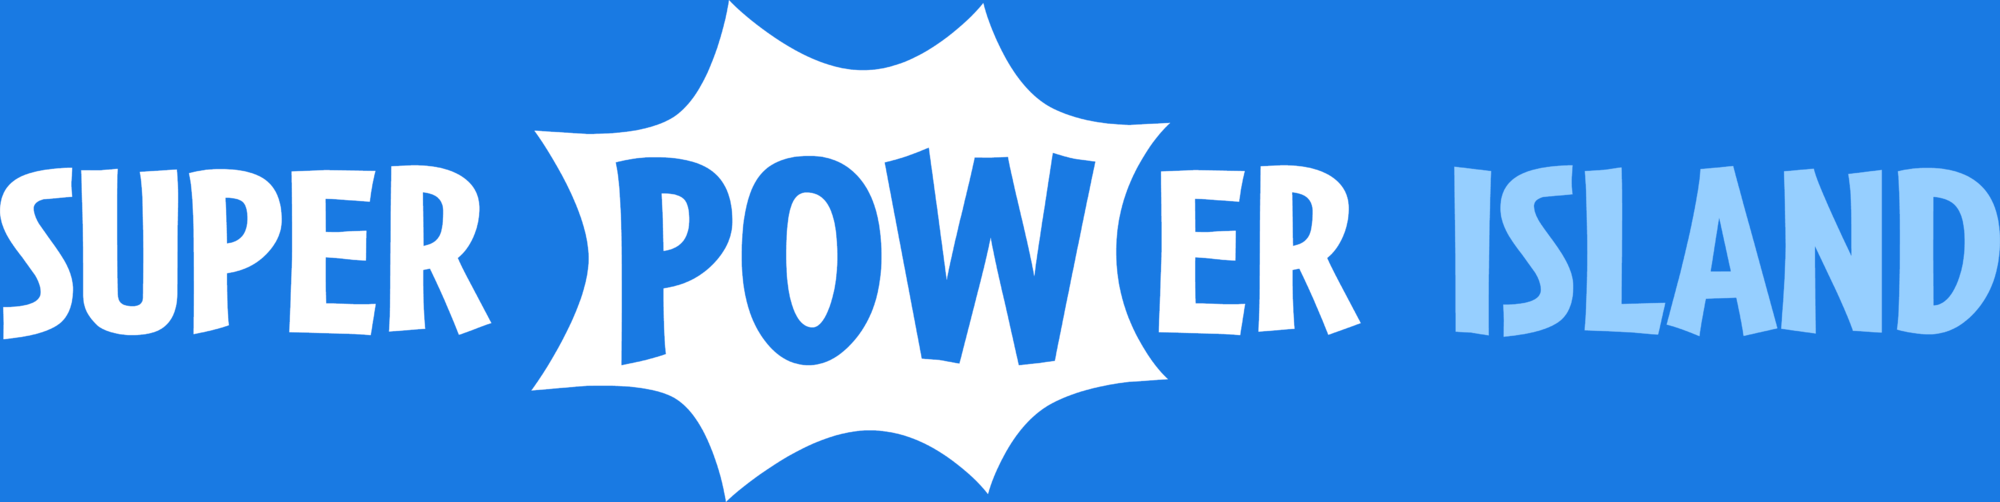 Poptropica Logo - Super Power Island | Poptropica Wiki | FANDOM powered by Wikia